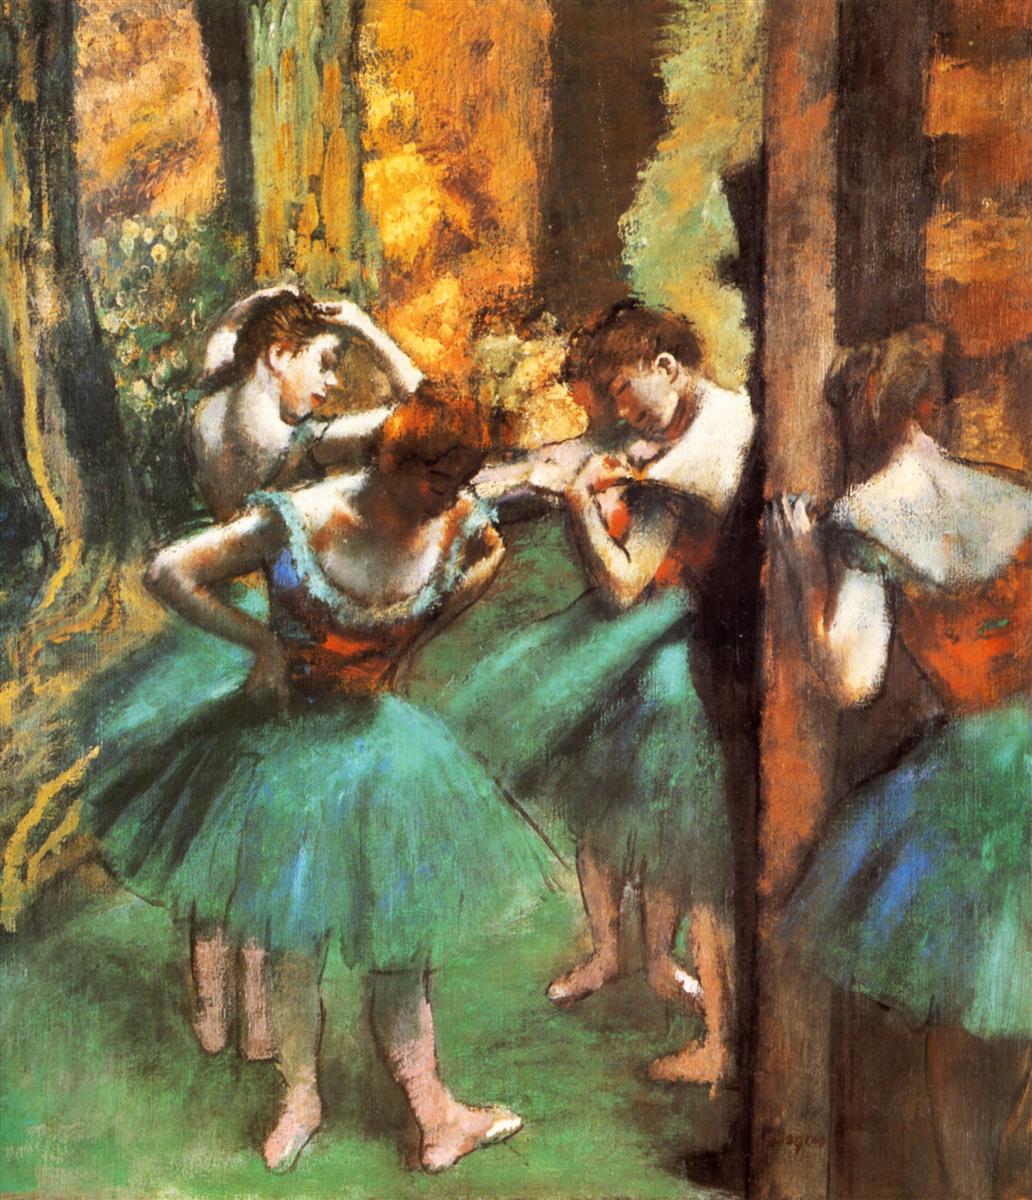 Edgar+Degas-1834-1917 (398).jpg